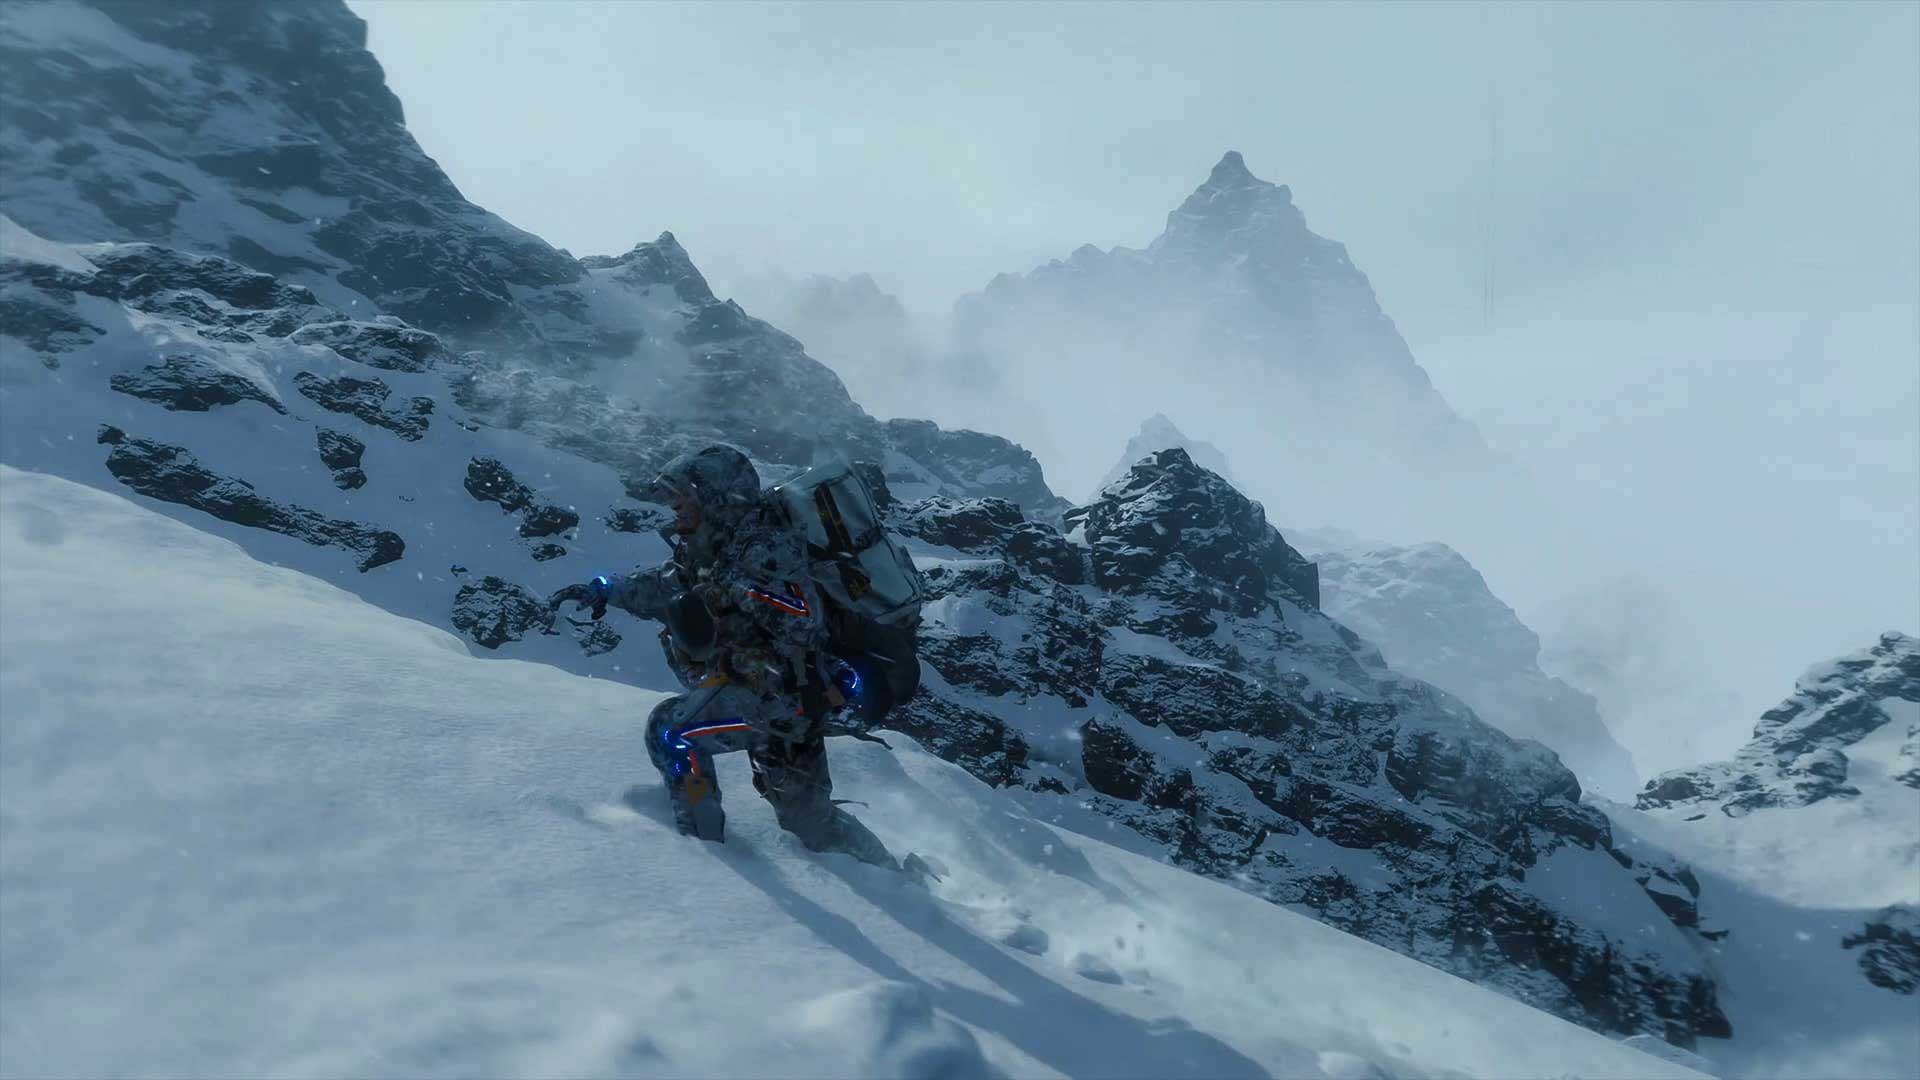 سم پورتر بریجز با بازی نورمن ریداس در بازی Death Stranding مشغول بالا رفتن از کوه برفی